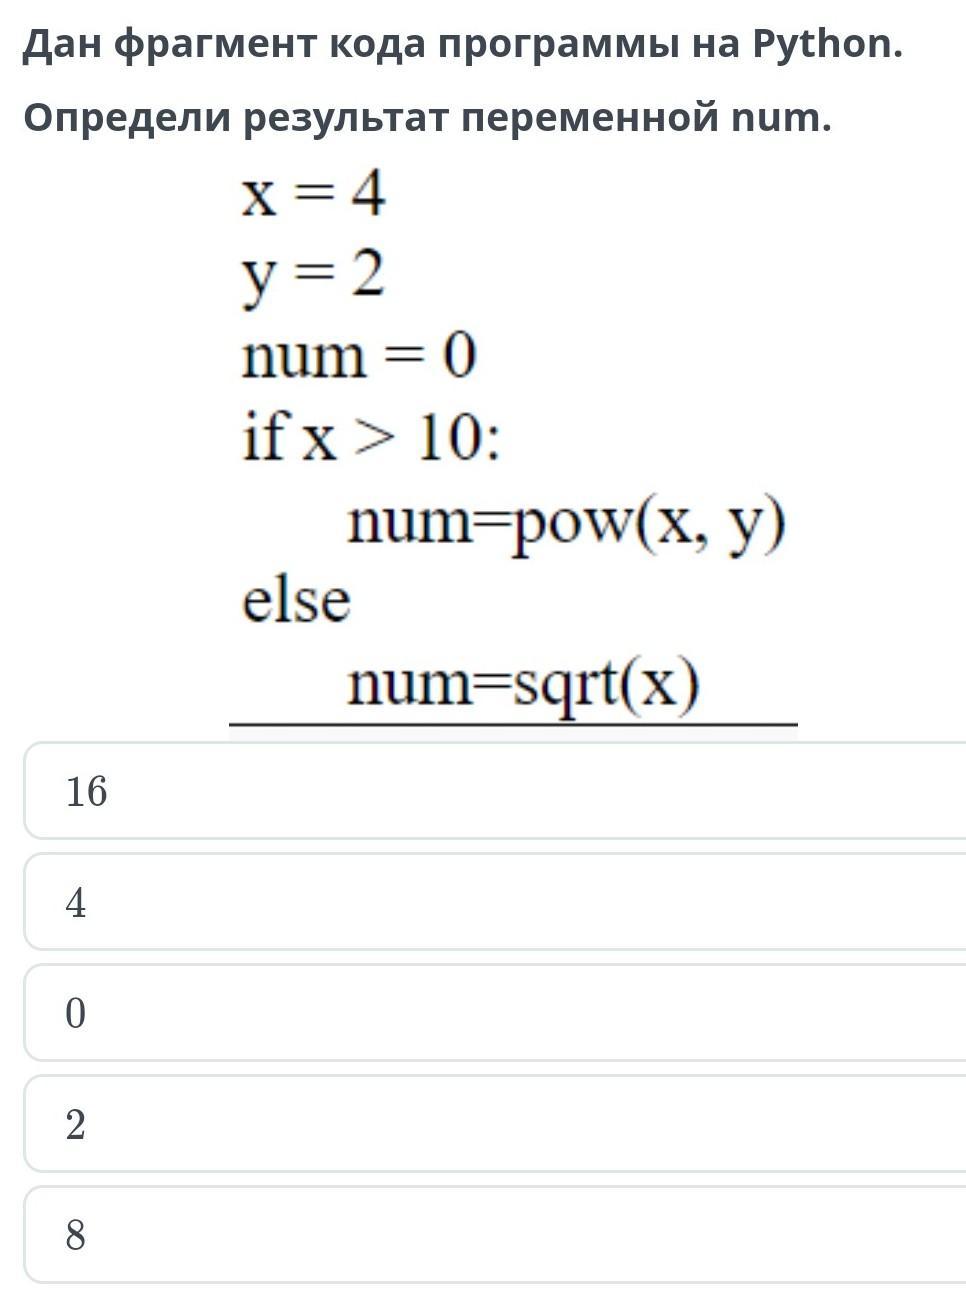 В данном фрагменте программы s 0. Переменная num.